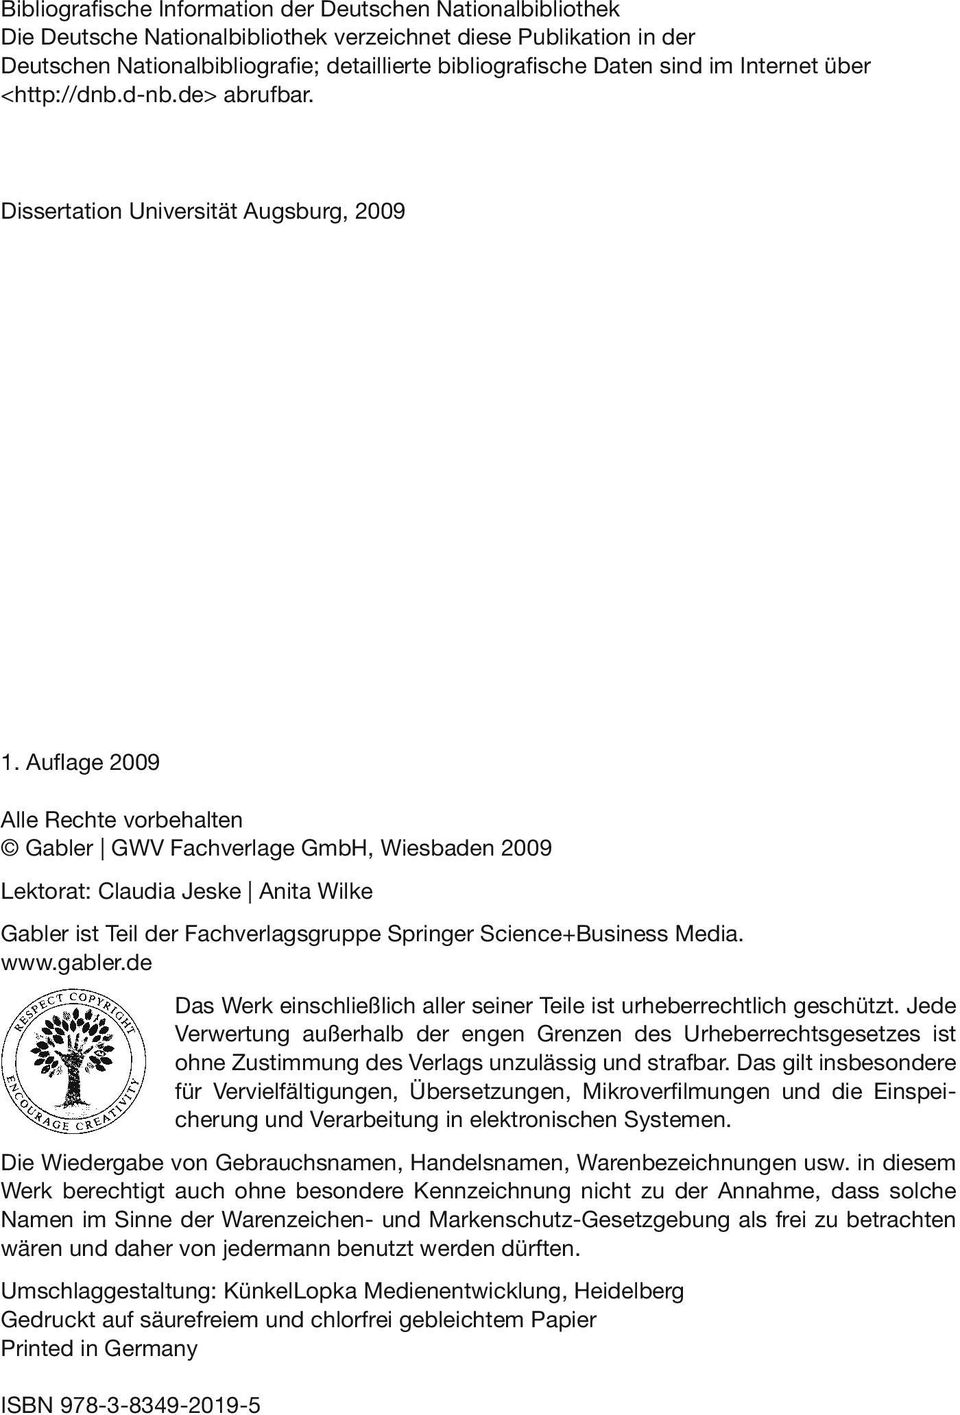 Auflage 2009 Alle Rechte vorbehalten Gabler GWV Fachverlage GmbH, Wiesbaden 2009 Lektorat: Claudia Jeske Anita Wilke Gabler ist Teil der Fachverlagsgruppe Springer Science+Business Media. www.gabler.